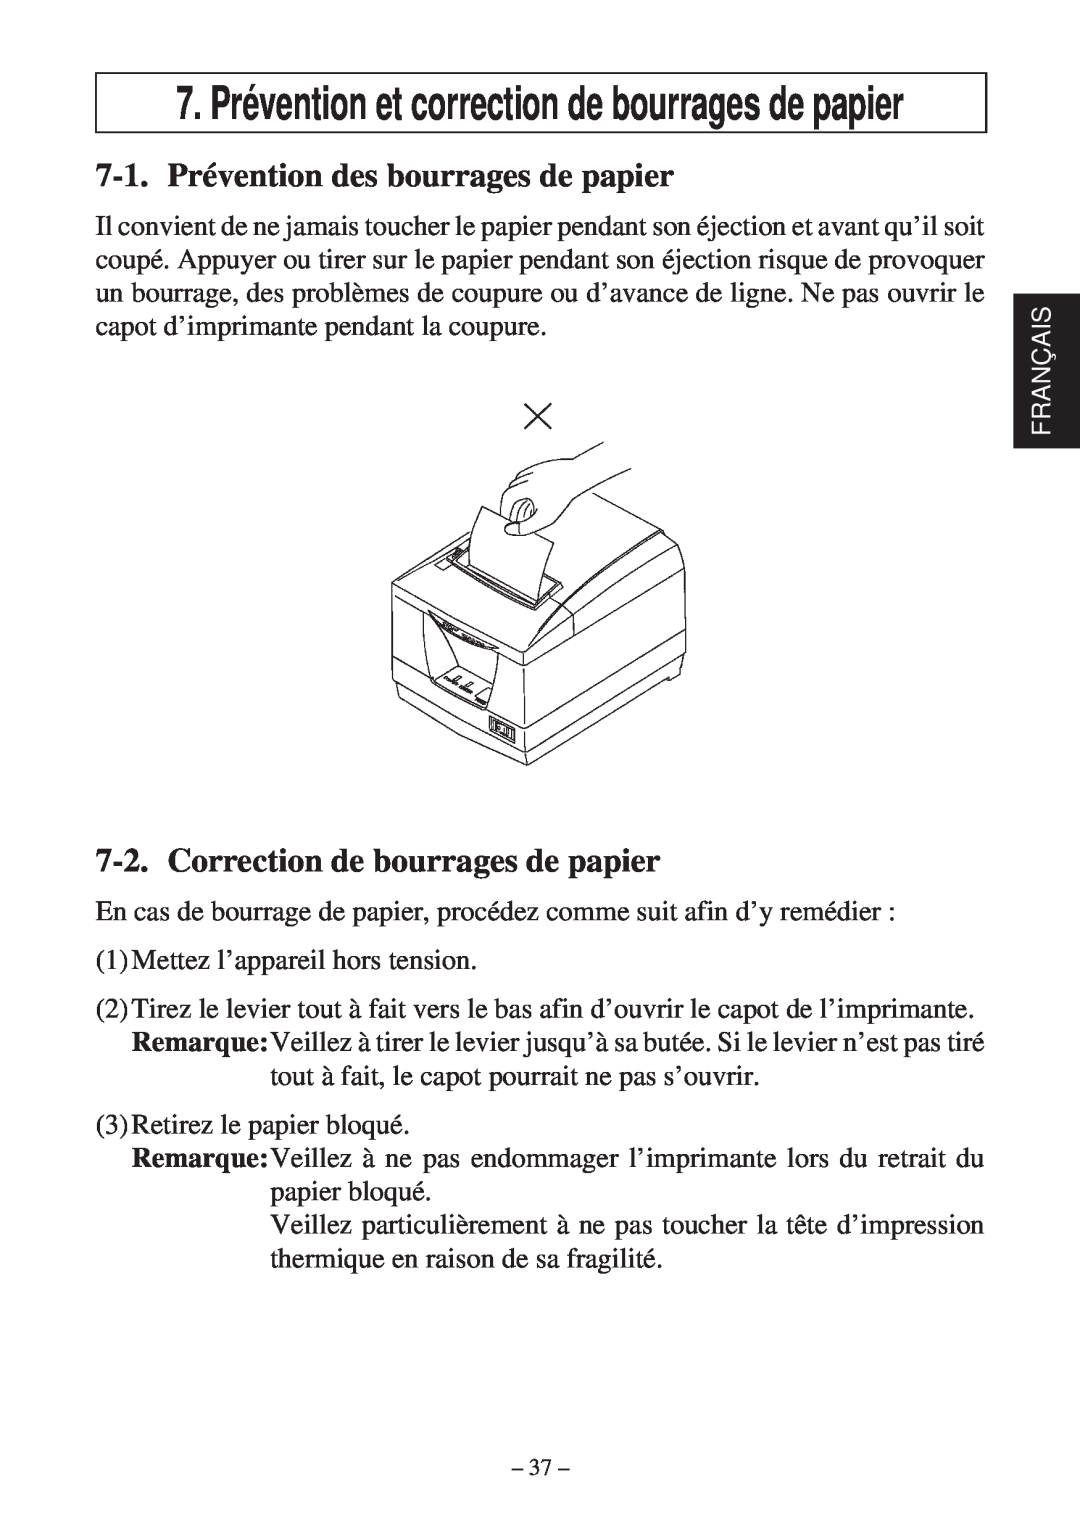 Star Micronics TSP2000 user manual 7-1. Prévention des bourrages de papier, Correction de bourrages de papier 